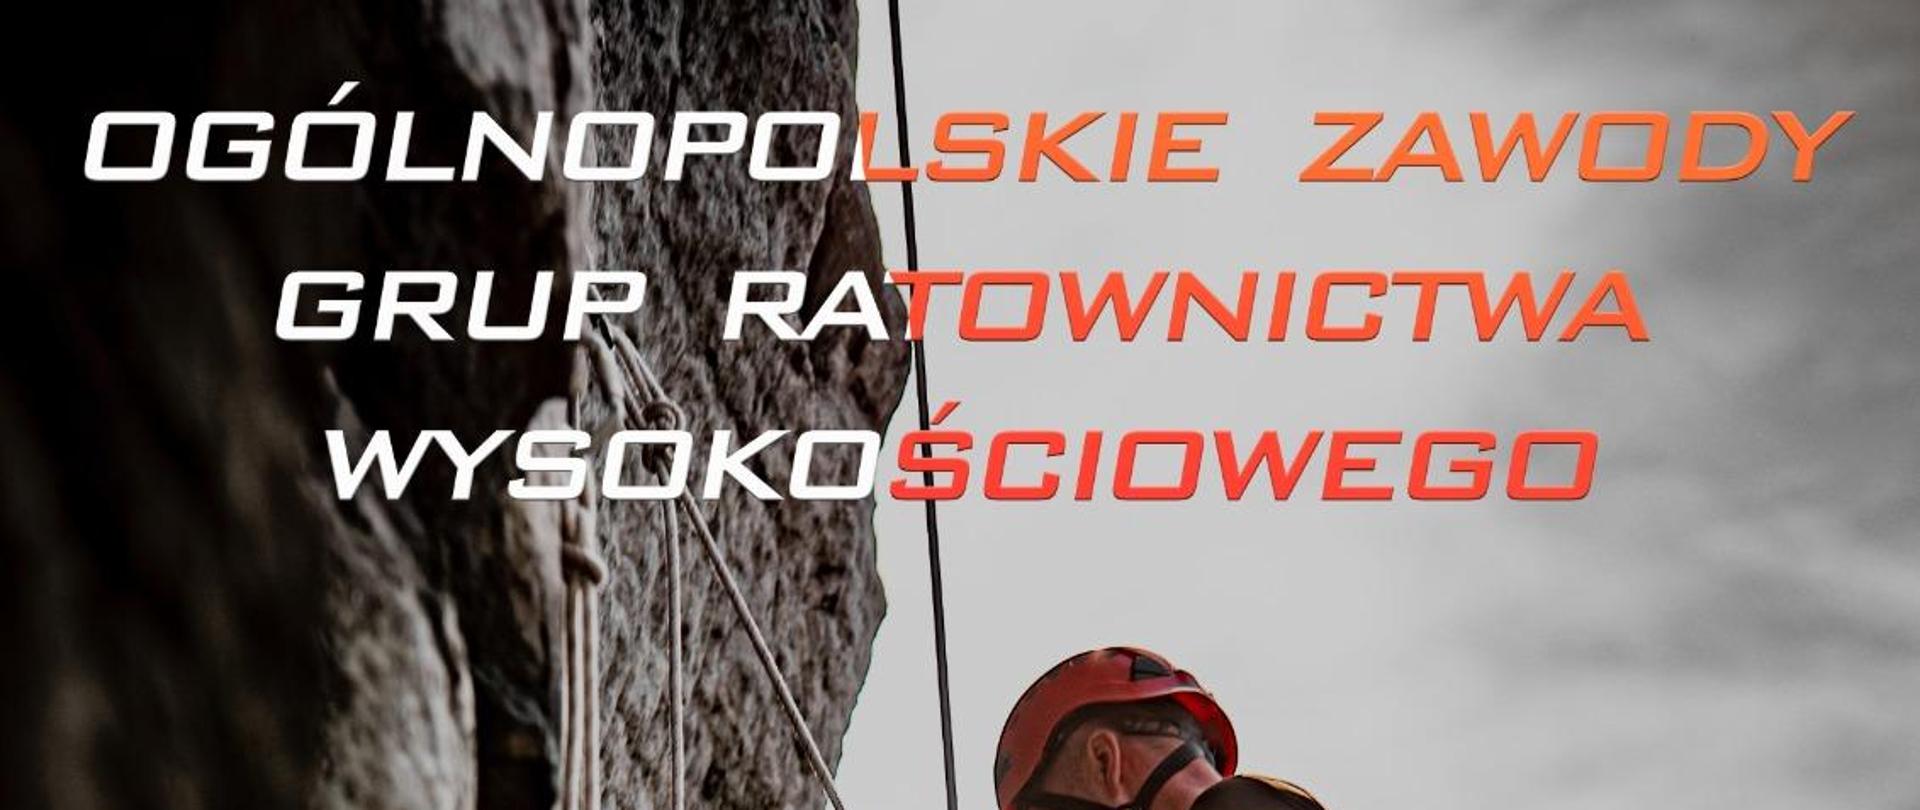 Plakat Ogólnopolskich Zawodów Grup Ratownictwa Wysokościowego, w środkowej części ratownik wysokościowy na linach przy skałach